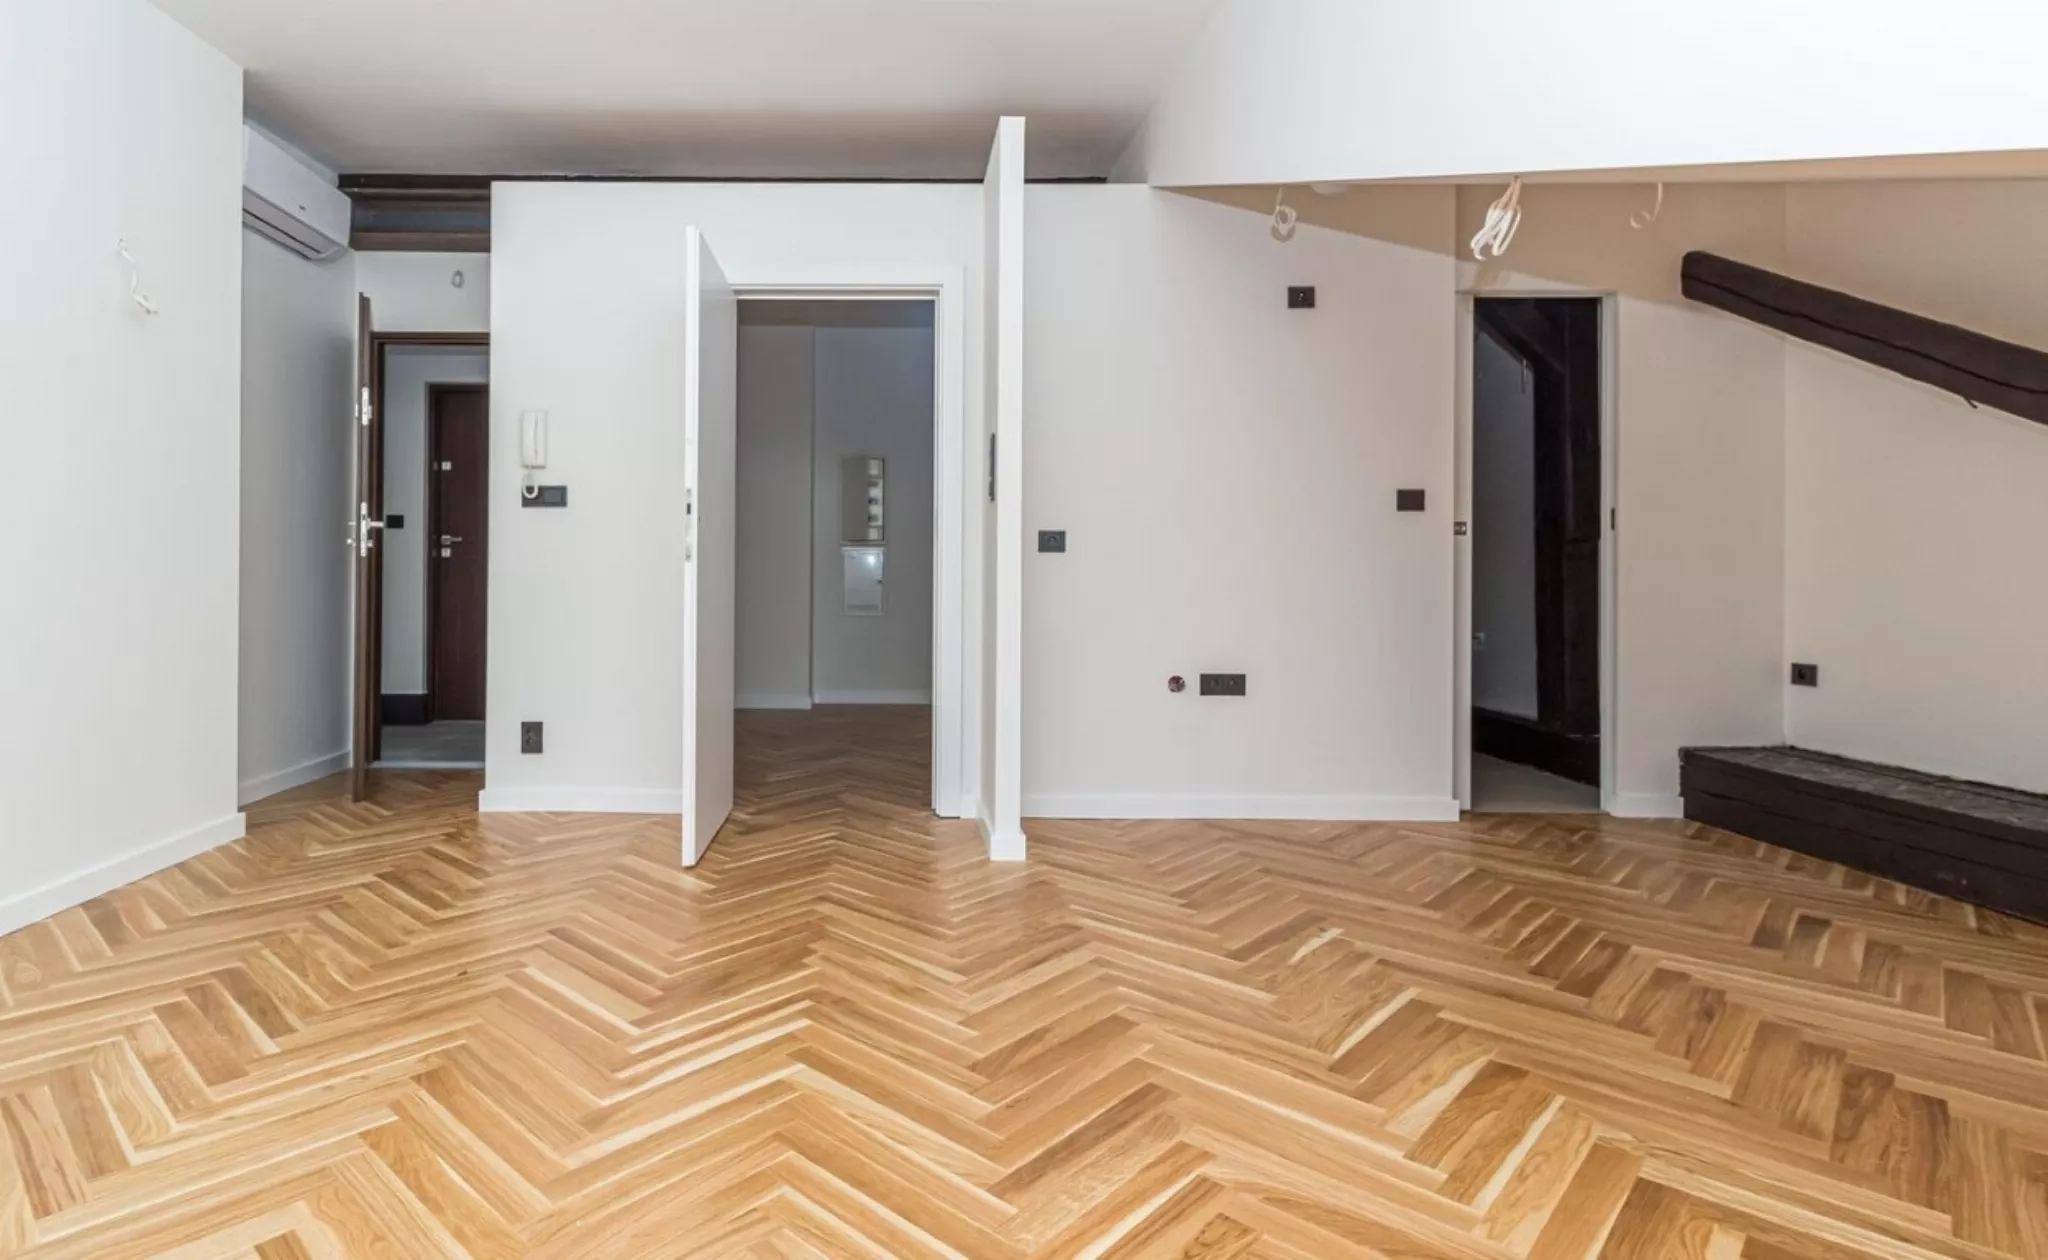 Stare Miasto sprzedam mieszkanie 44,55m2, 2 pokoje - Mieszkanie na sprzedaż Kraków